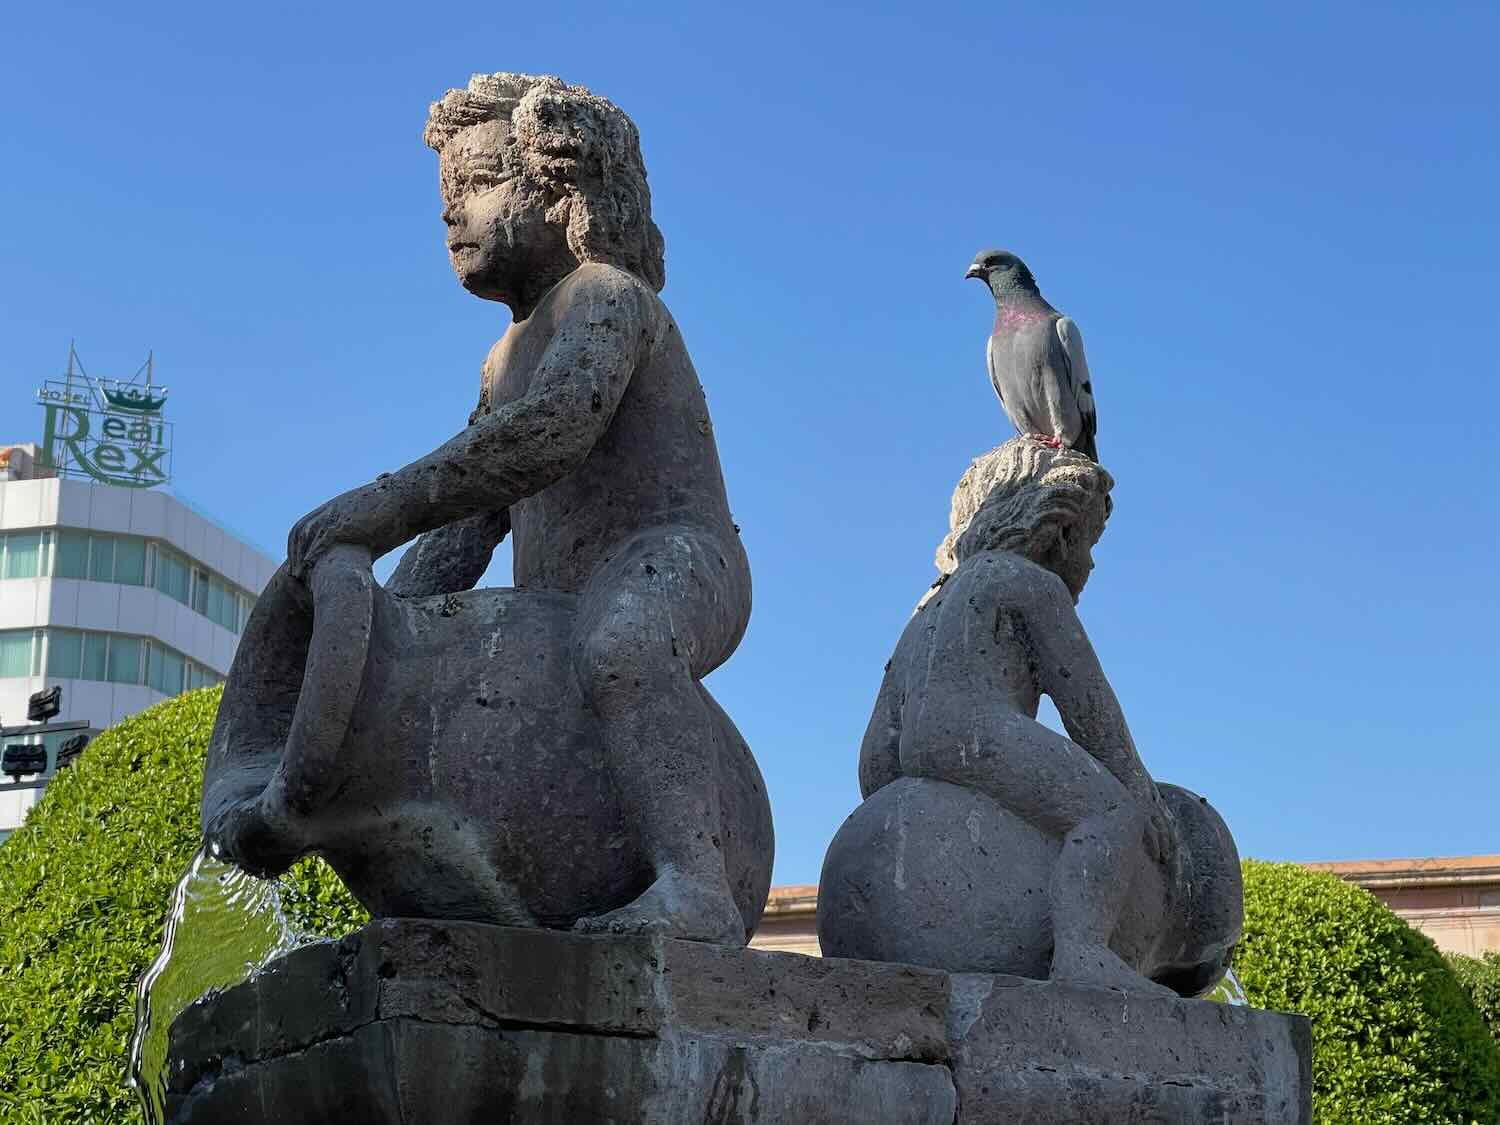 Statue in the Plaza Principál